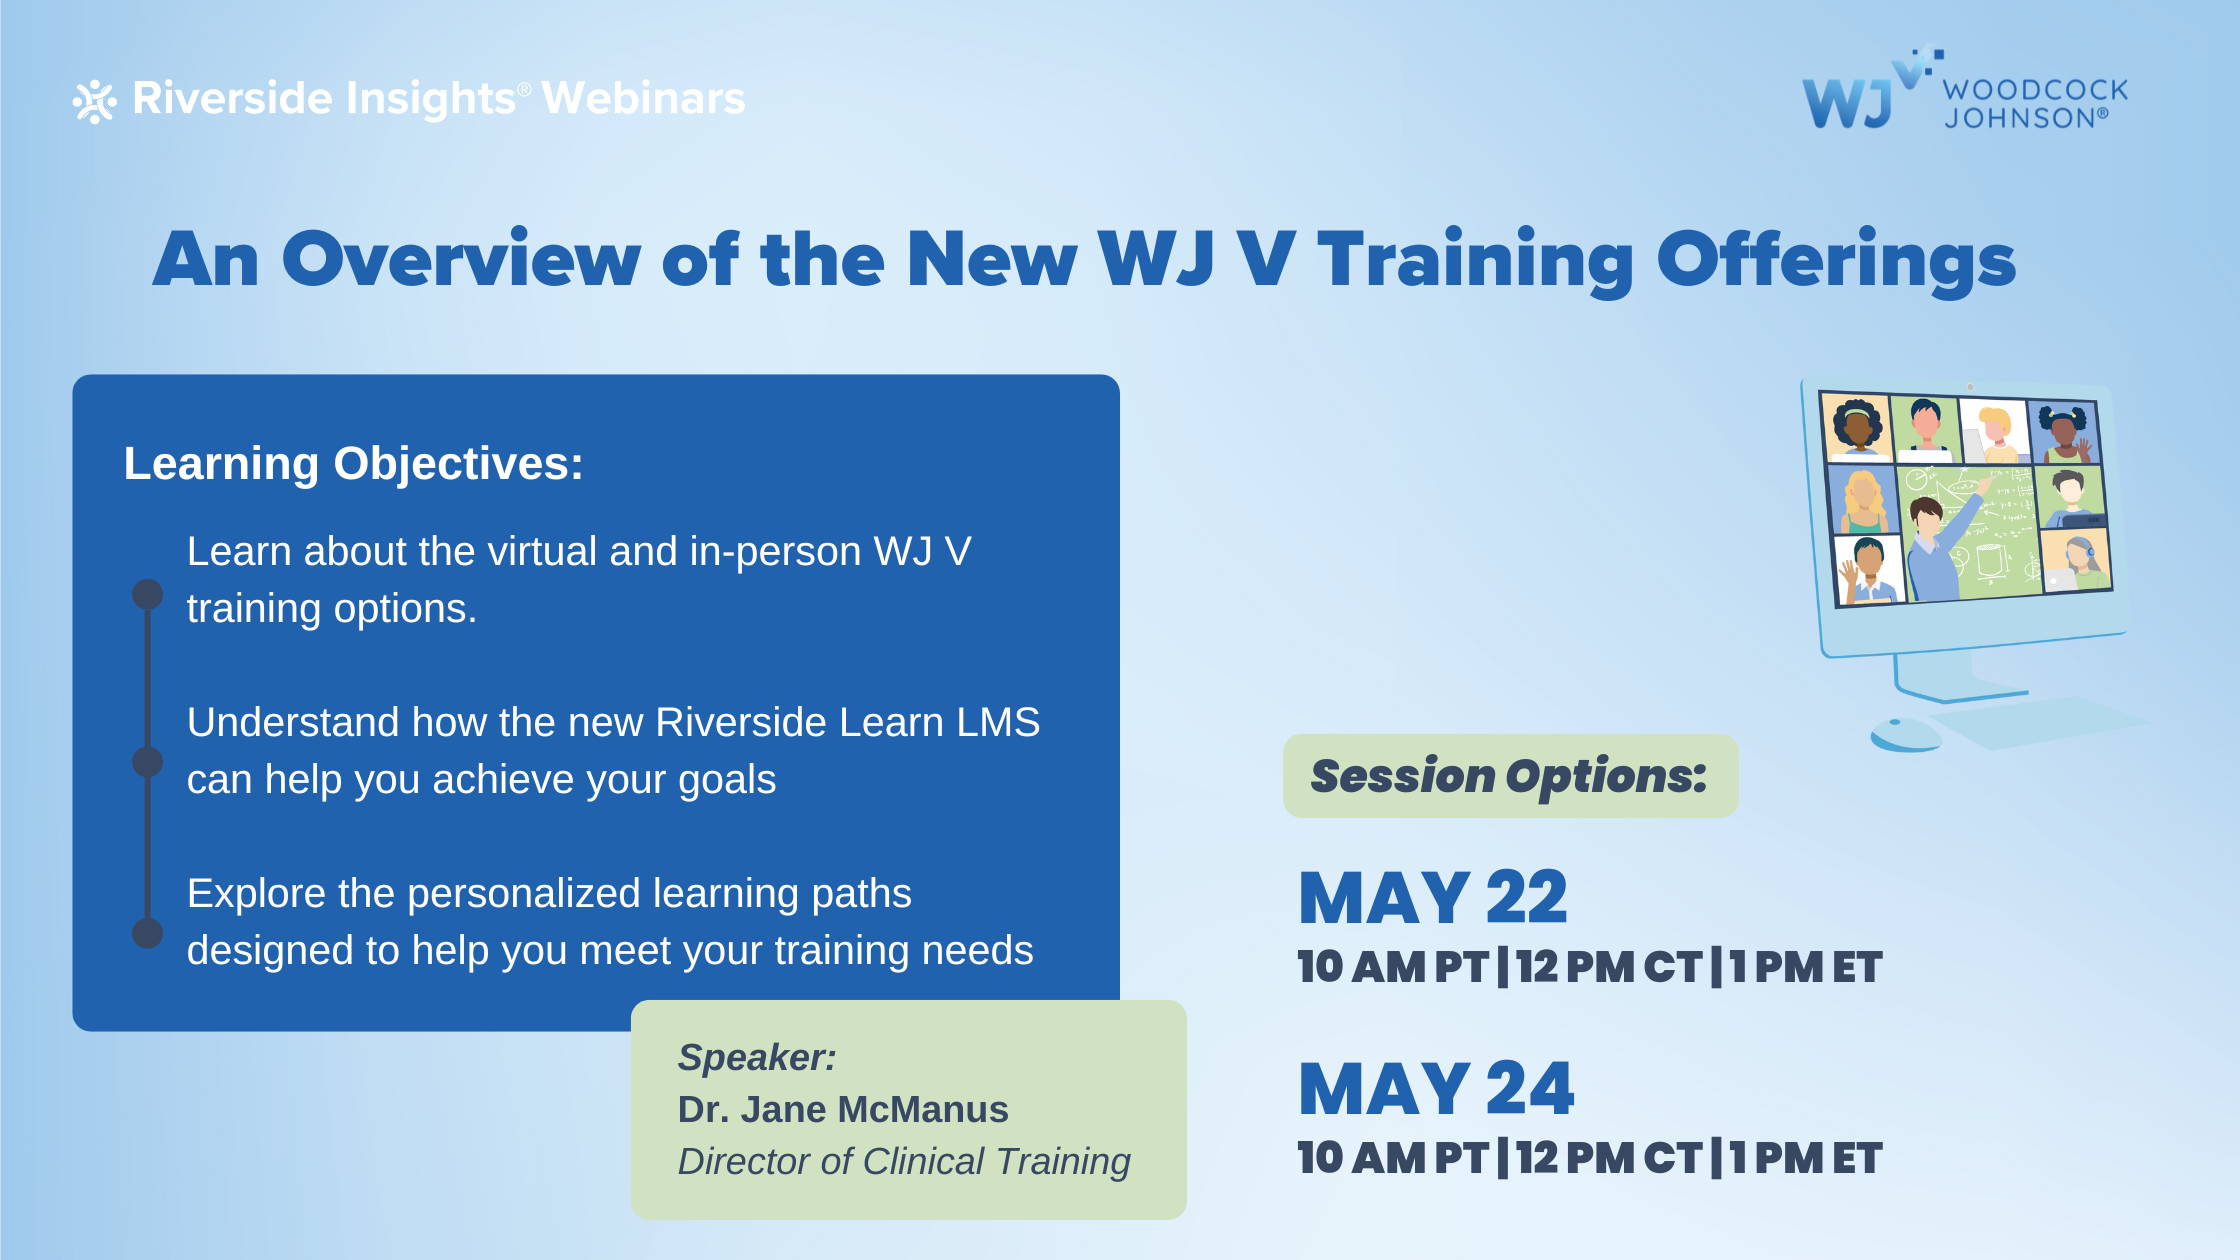 Register for the WJ V Webinar